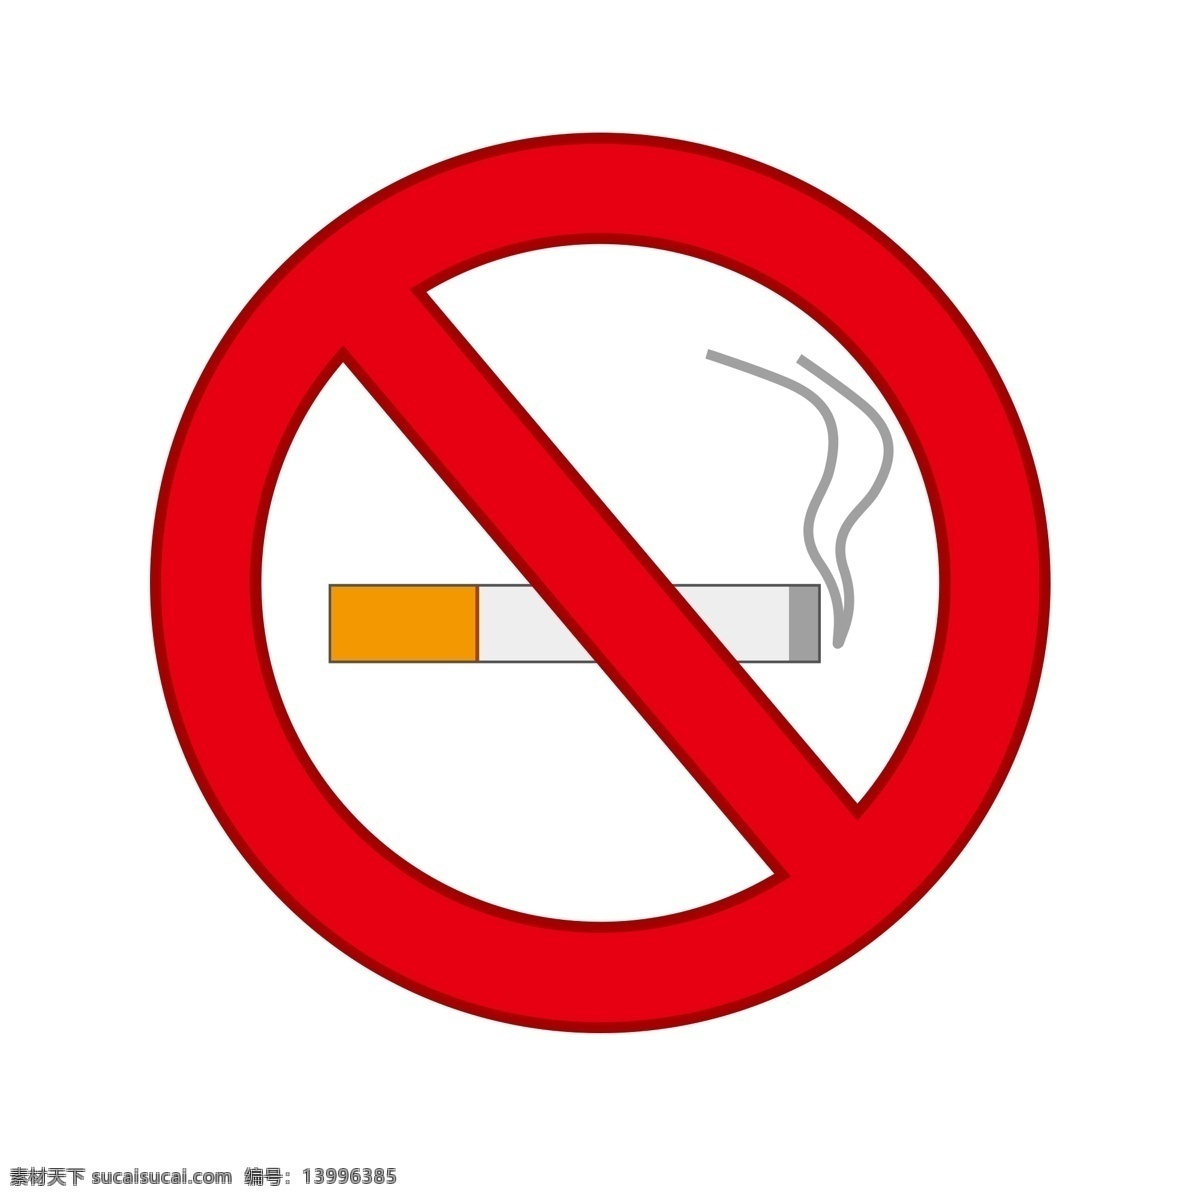 简单 禁止 吸烟 标志 矢量 简约 禁止吸烟 禁烟 香烟 烟 标识 公共标识 图标 标签 小图标 拒绝卡通